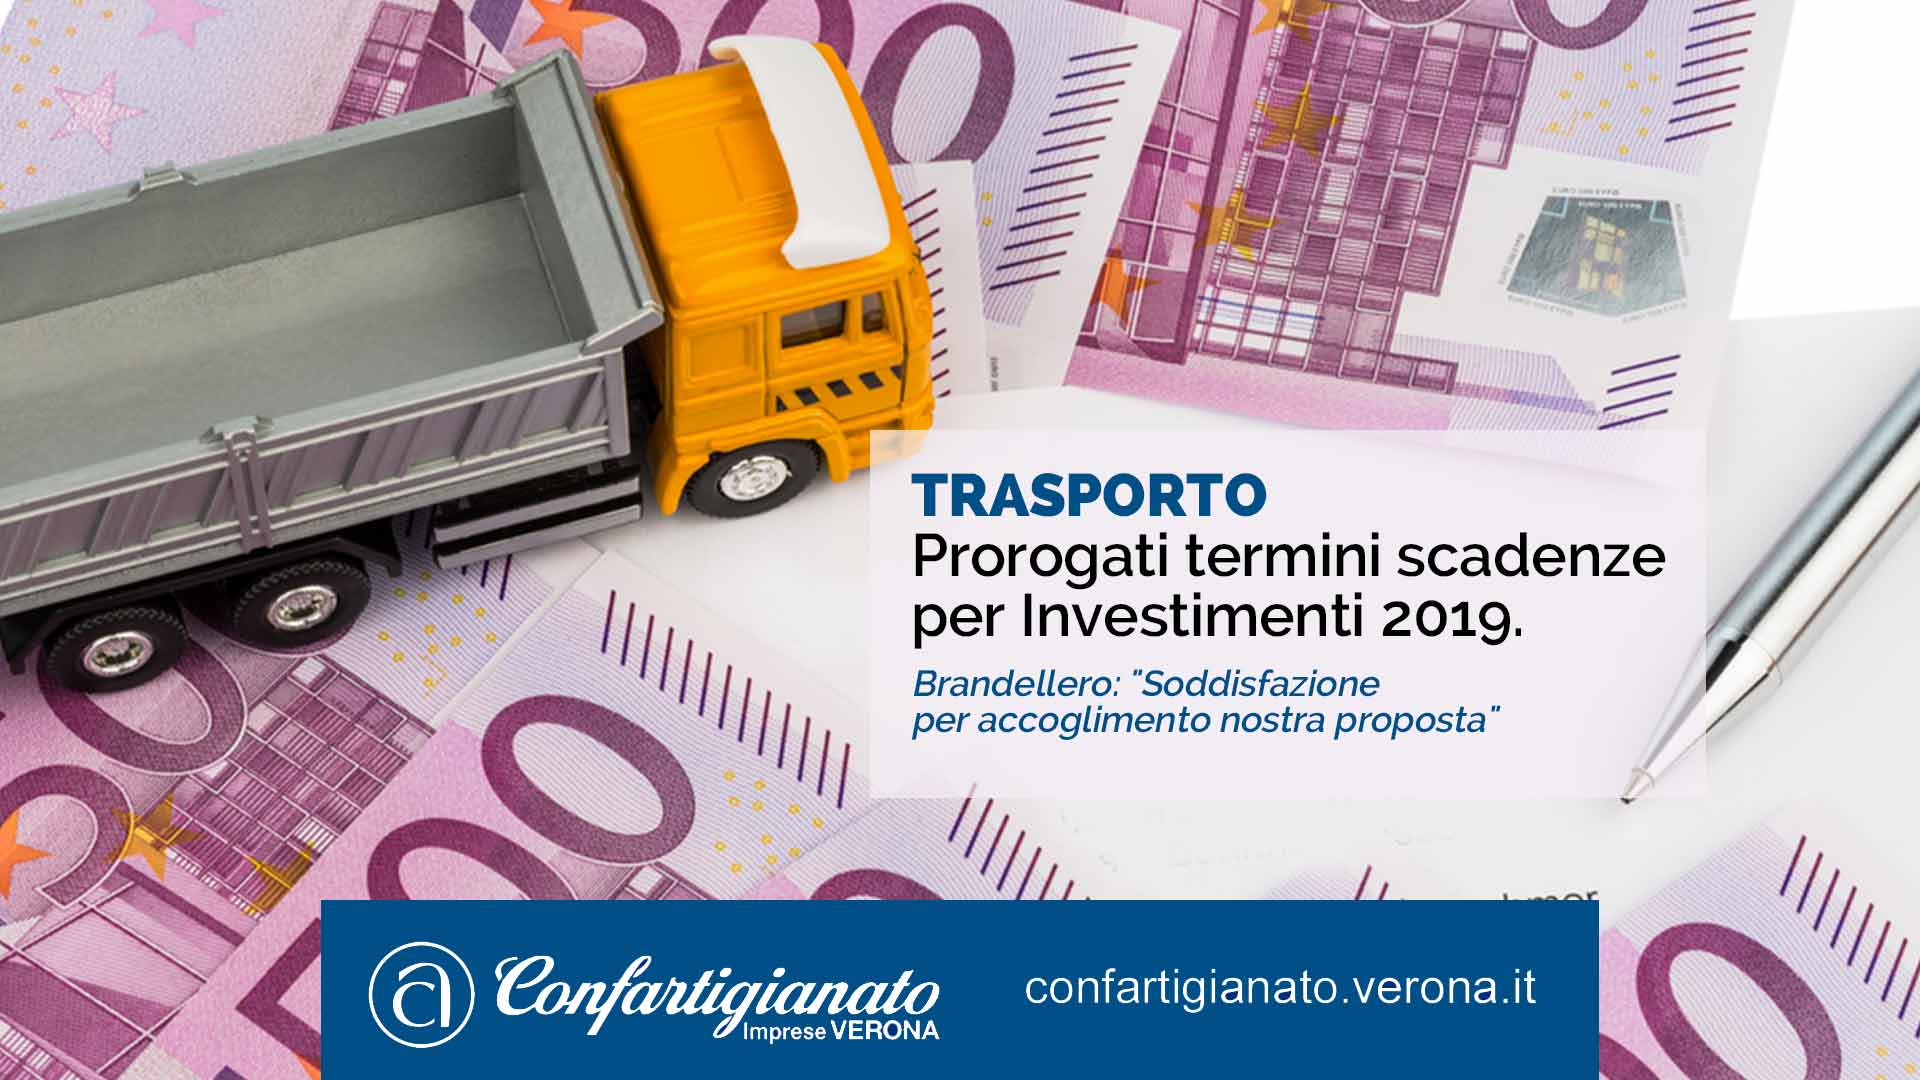 TRASPORTI – Prorogati termini scadenze per Investimenti 2019. Brandellero: "Soddisfazione per accoglimento nostra proposta"